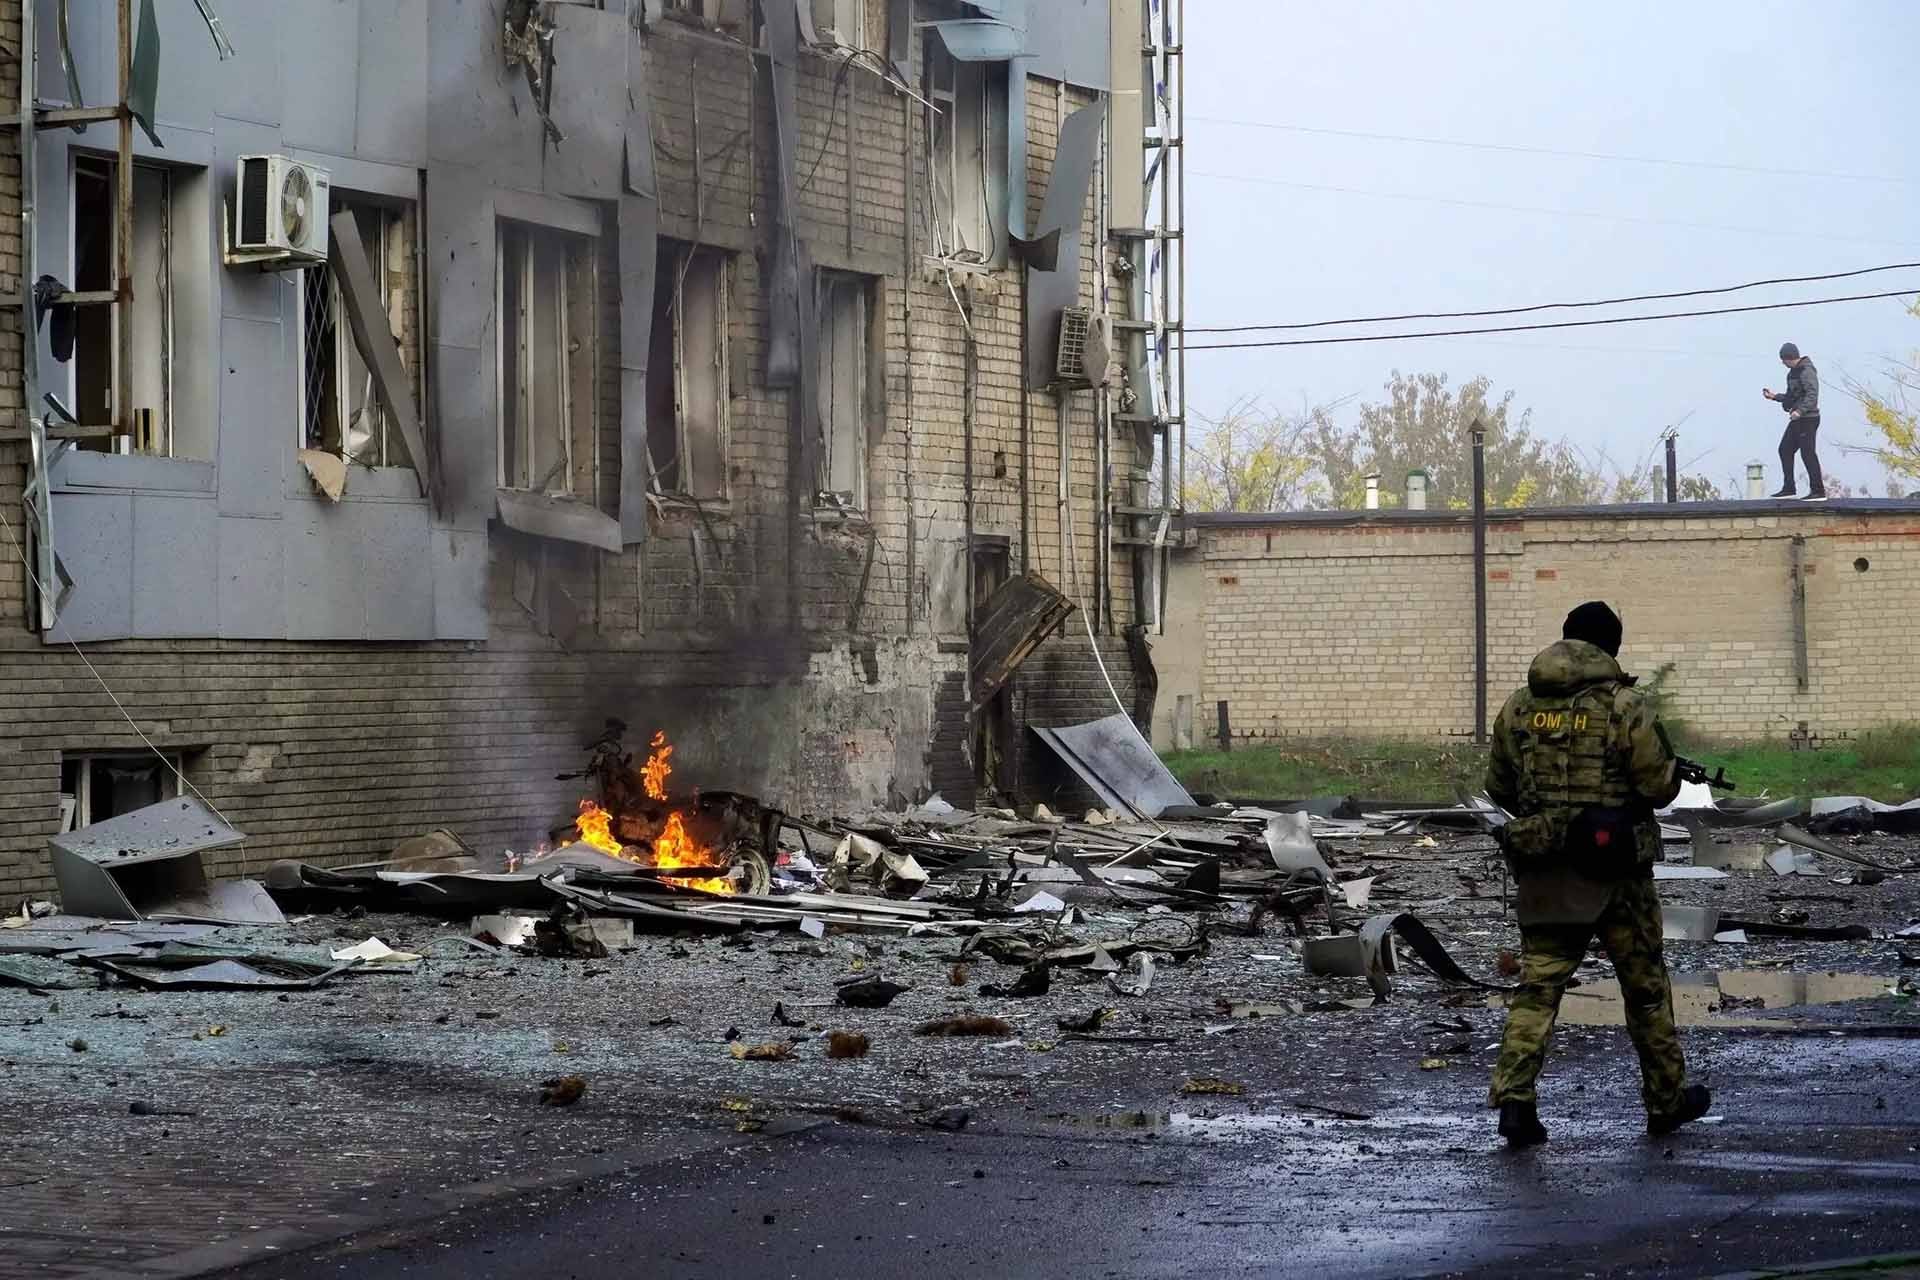  Các cuộc xung đột, điểm nóng là chủ đề xuyên suốt của thế giới trong năm 2022. Trong ảnh, một tòa nhà đổ nát tại thành phố Melitopol sau các đợt giao tranh giữa lực lượng Ukraine và Nga hồi tháng 10. (Nguồn: AFP/Getty Images)